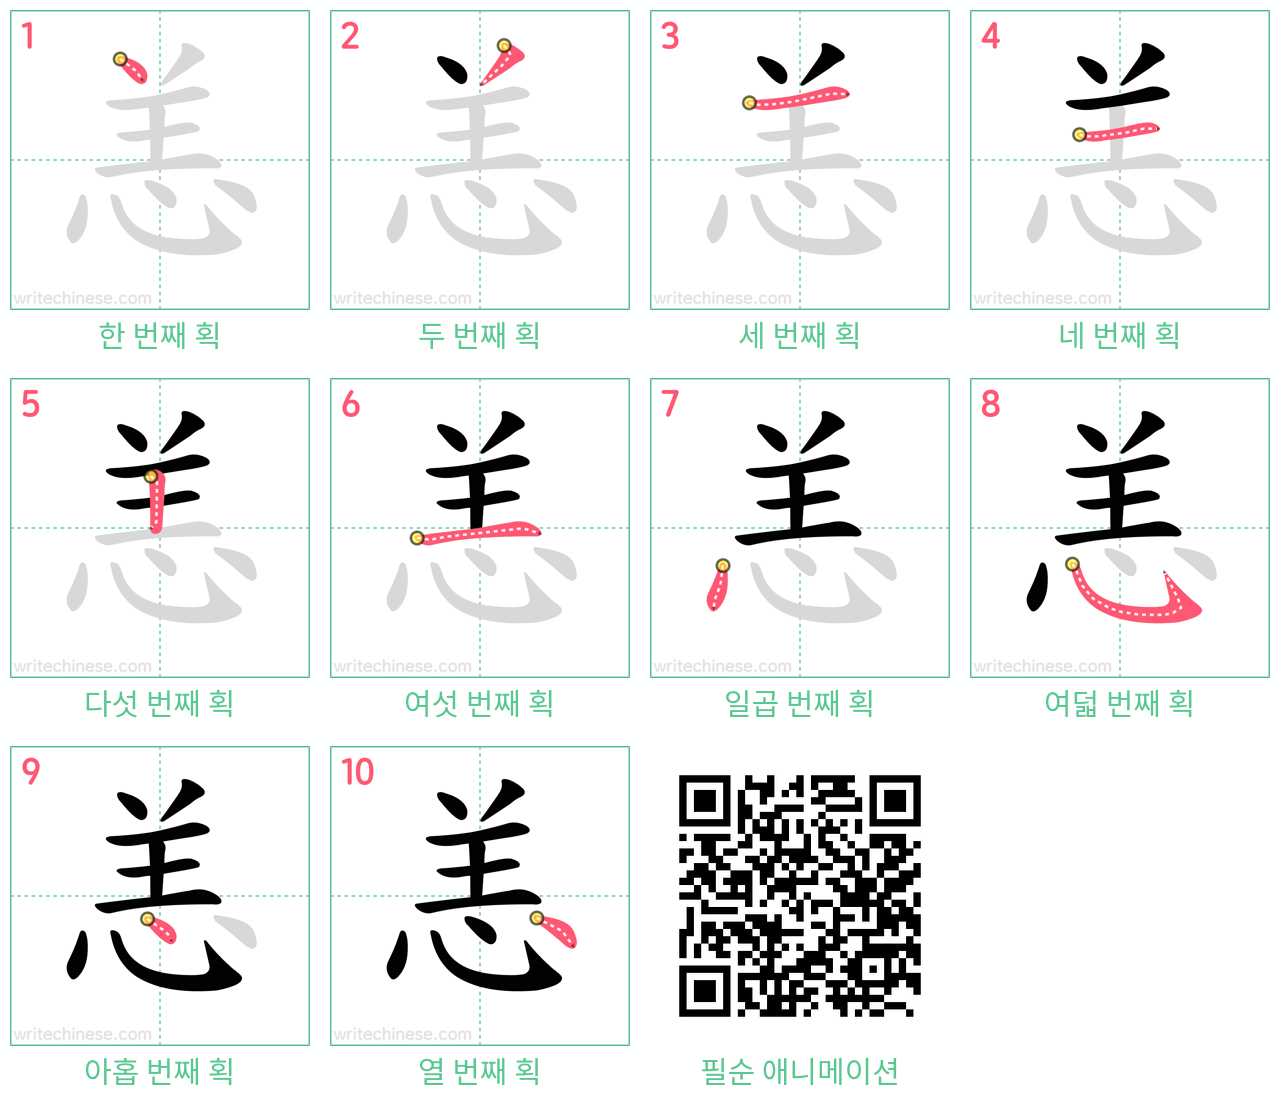 恙 step-by-step stroke order diagrams